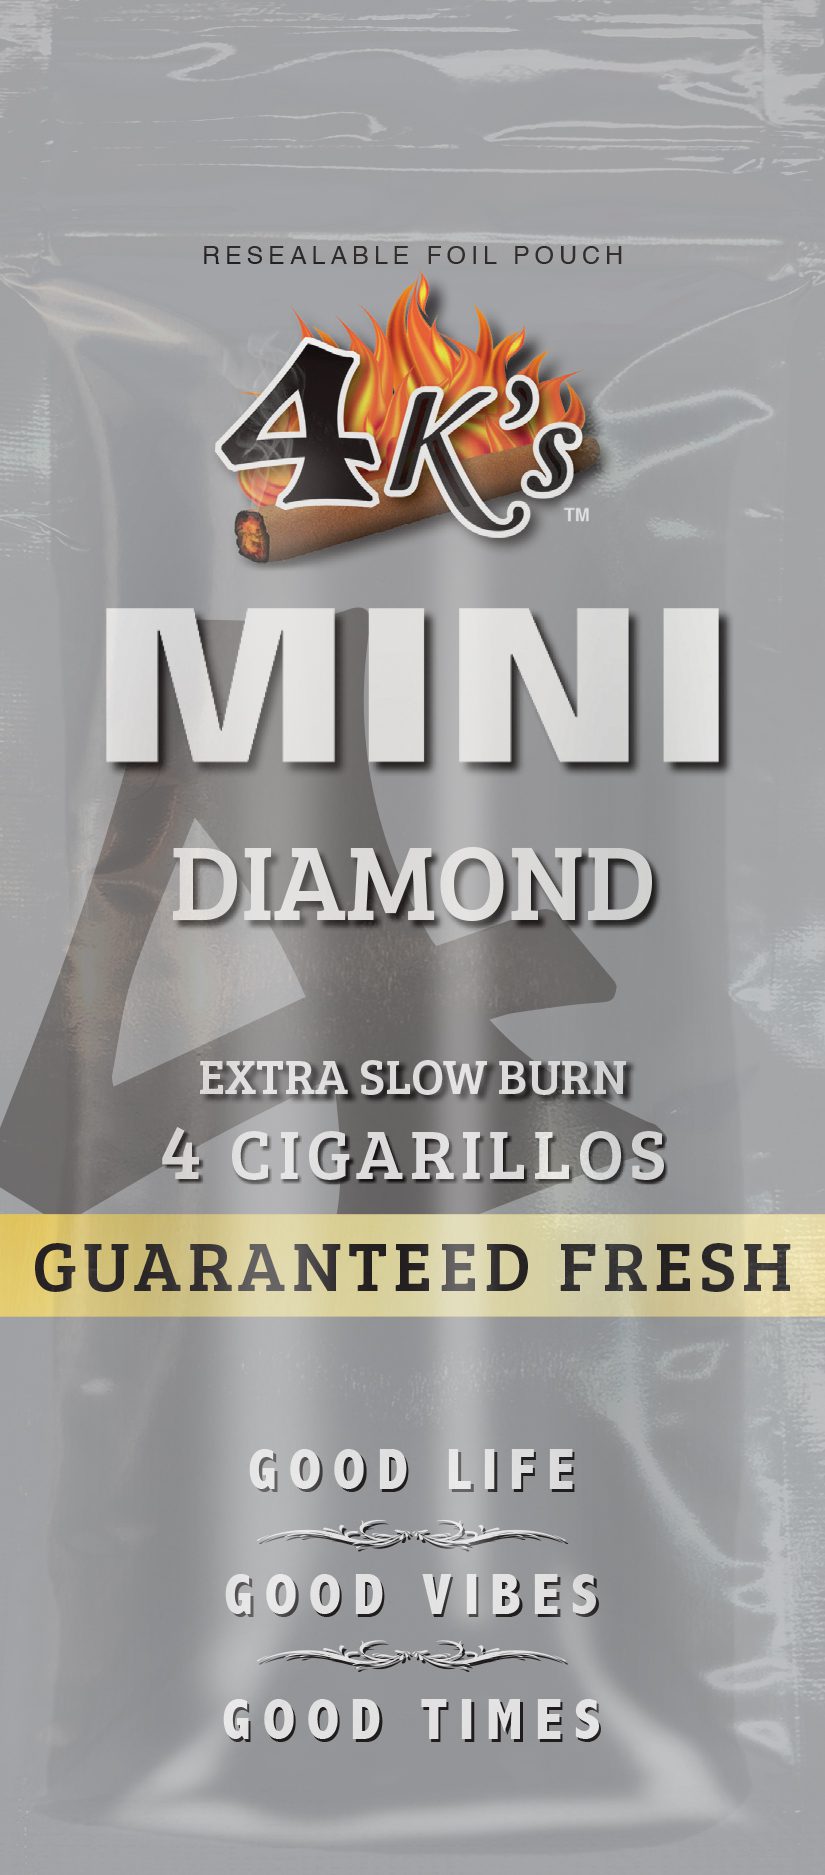 4Ks_MINIS_Diamond_Web